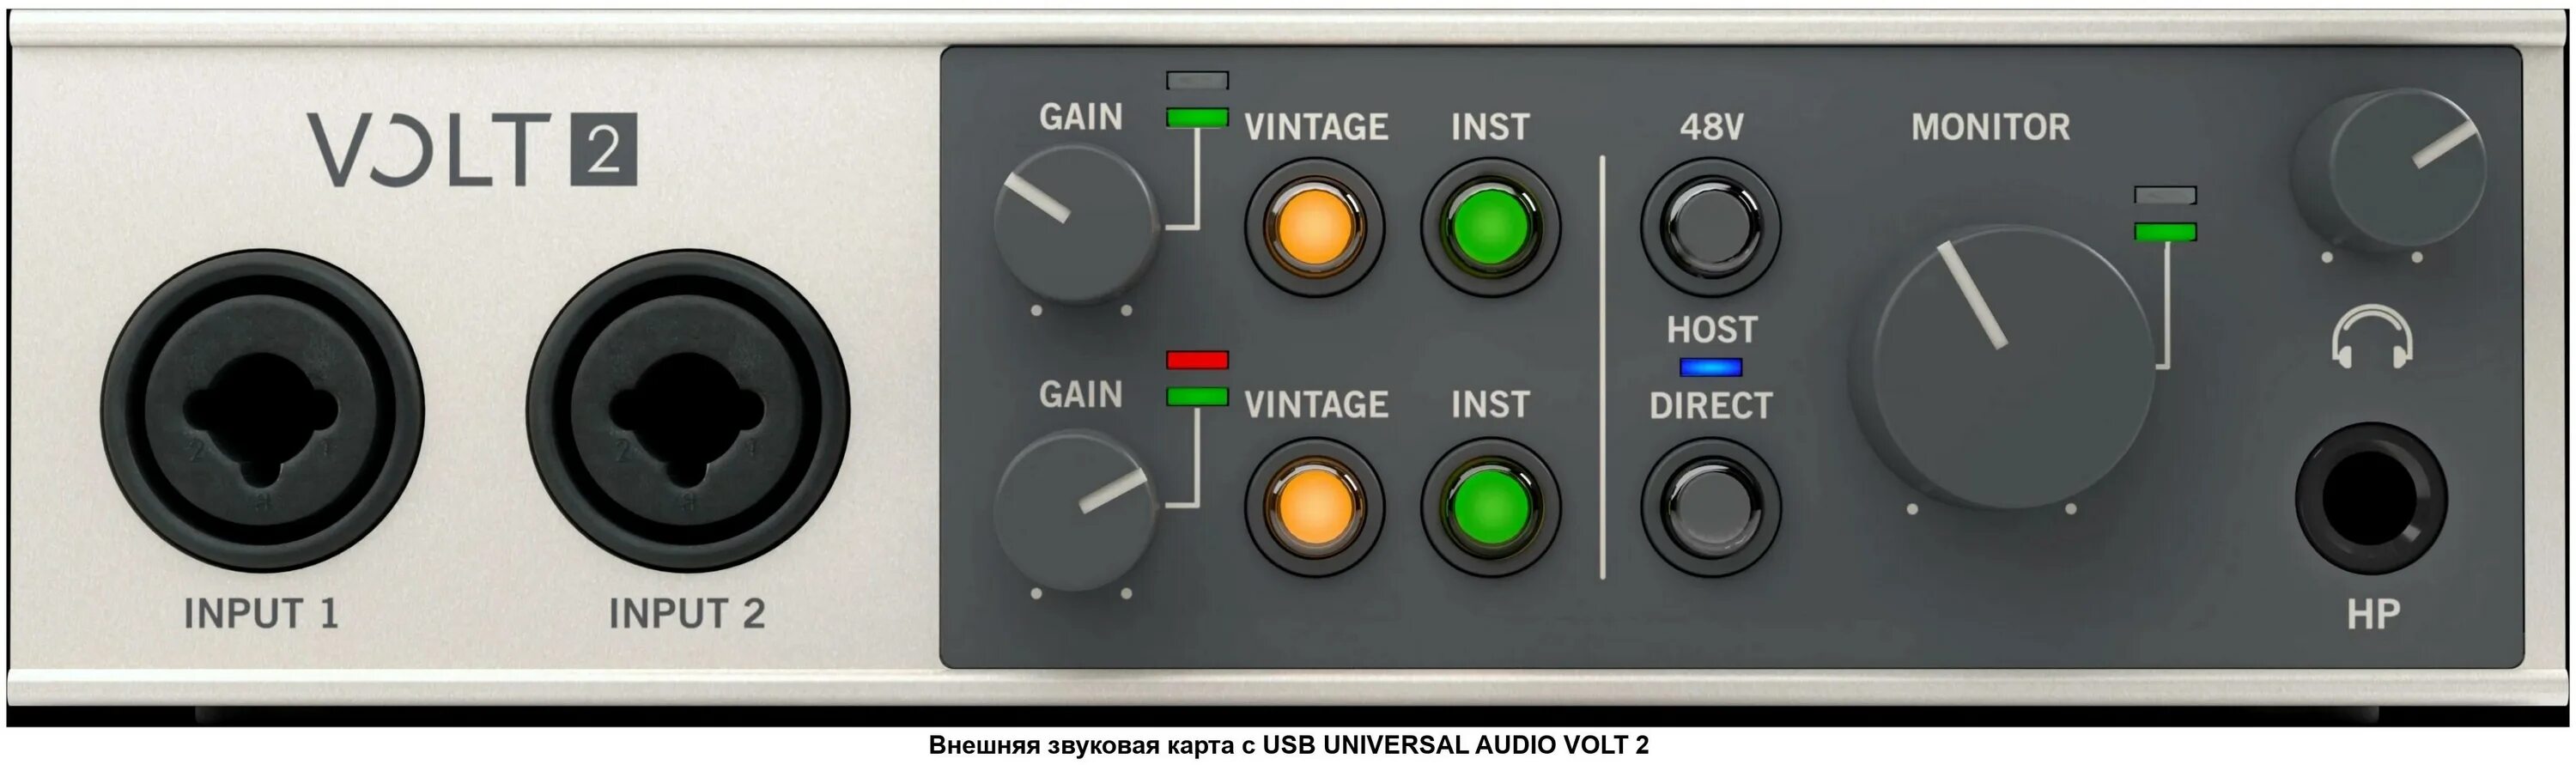 Universal Audio Volt 2. Universal Audio Volt 4. Universal Audio Volt 1. Аудиокарта Universal Audio Volt 1. Uad volt